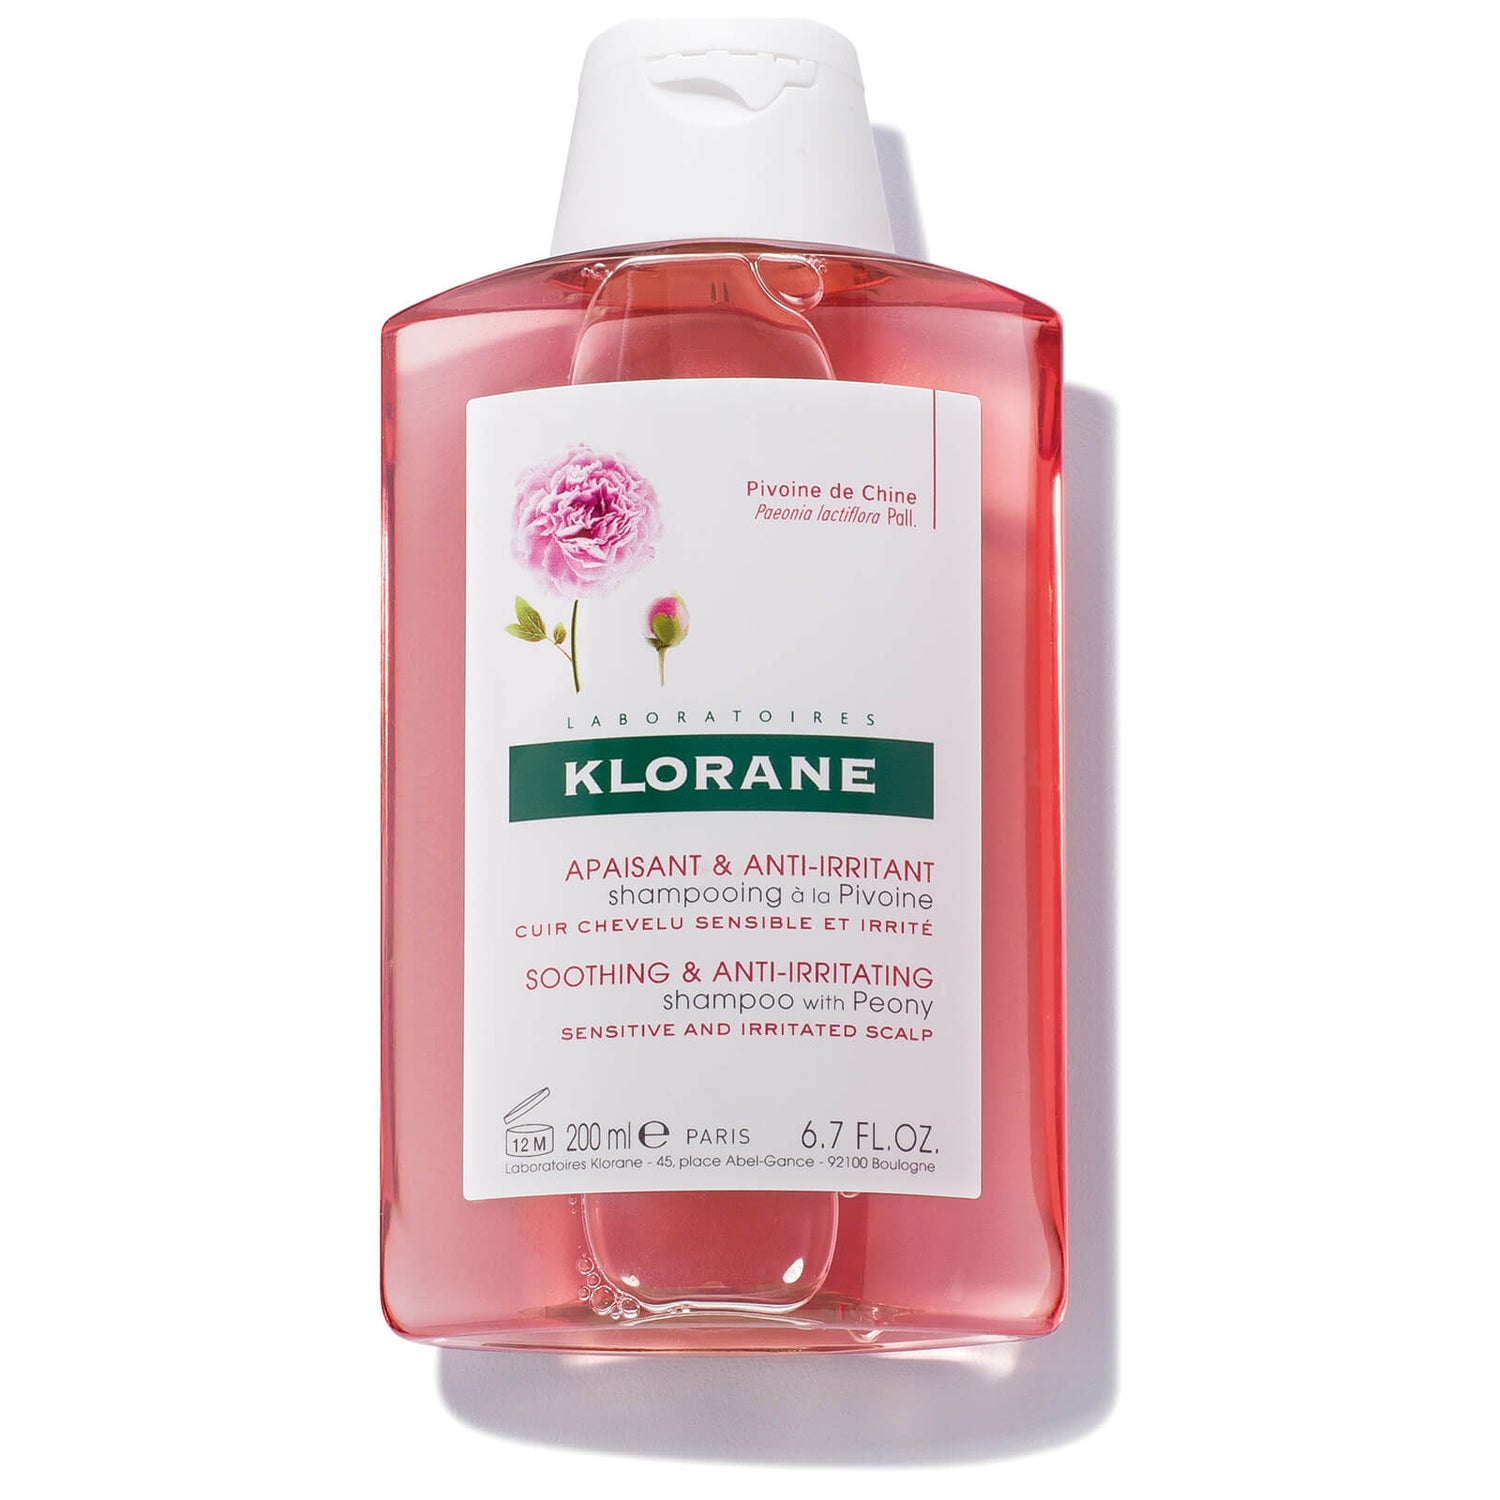 KLORANE Shampoo with Peony 6.7oz